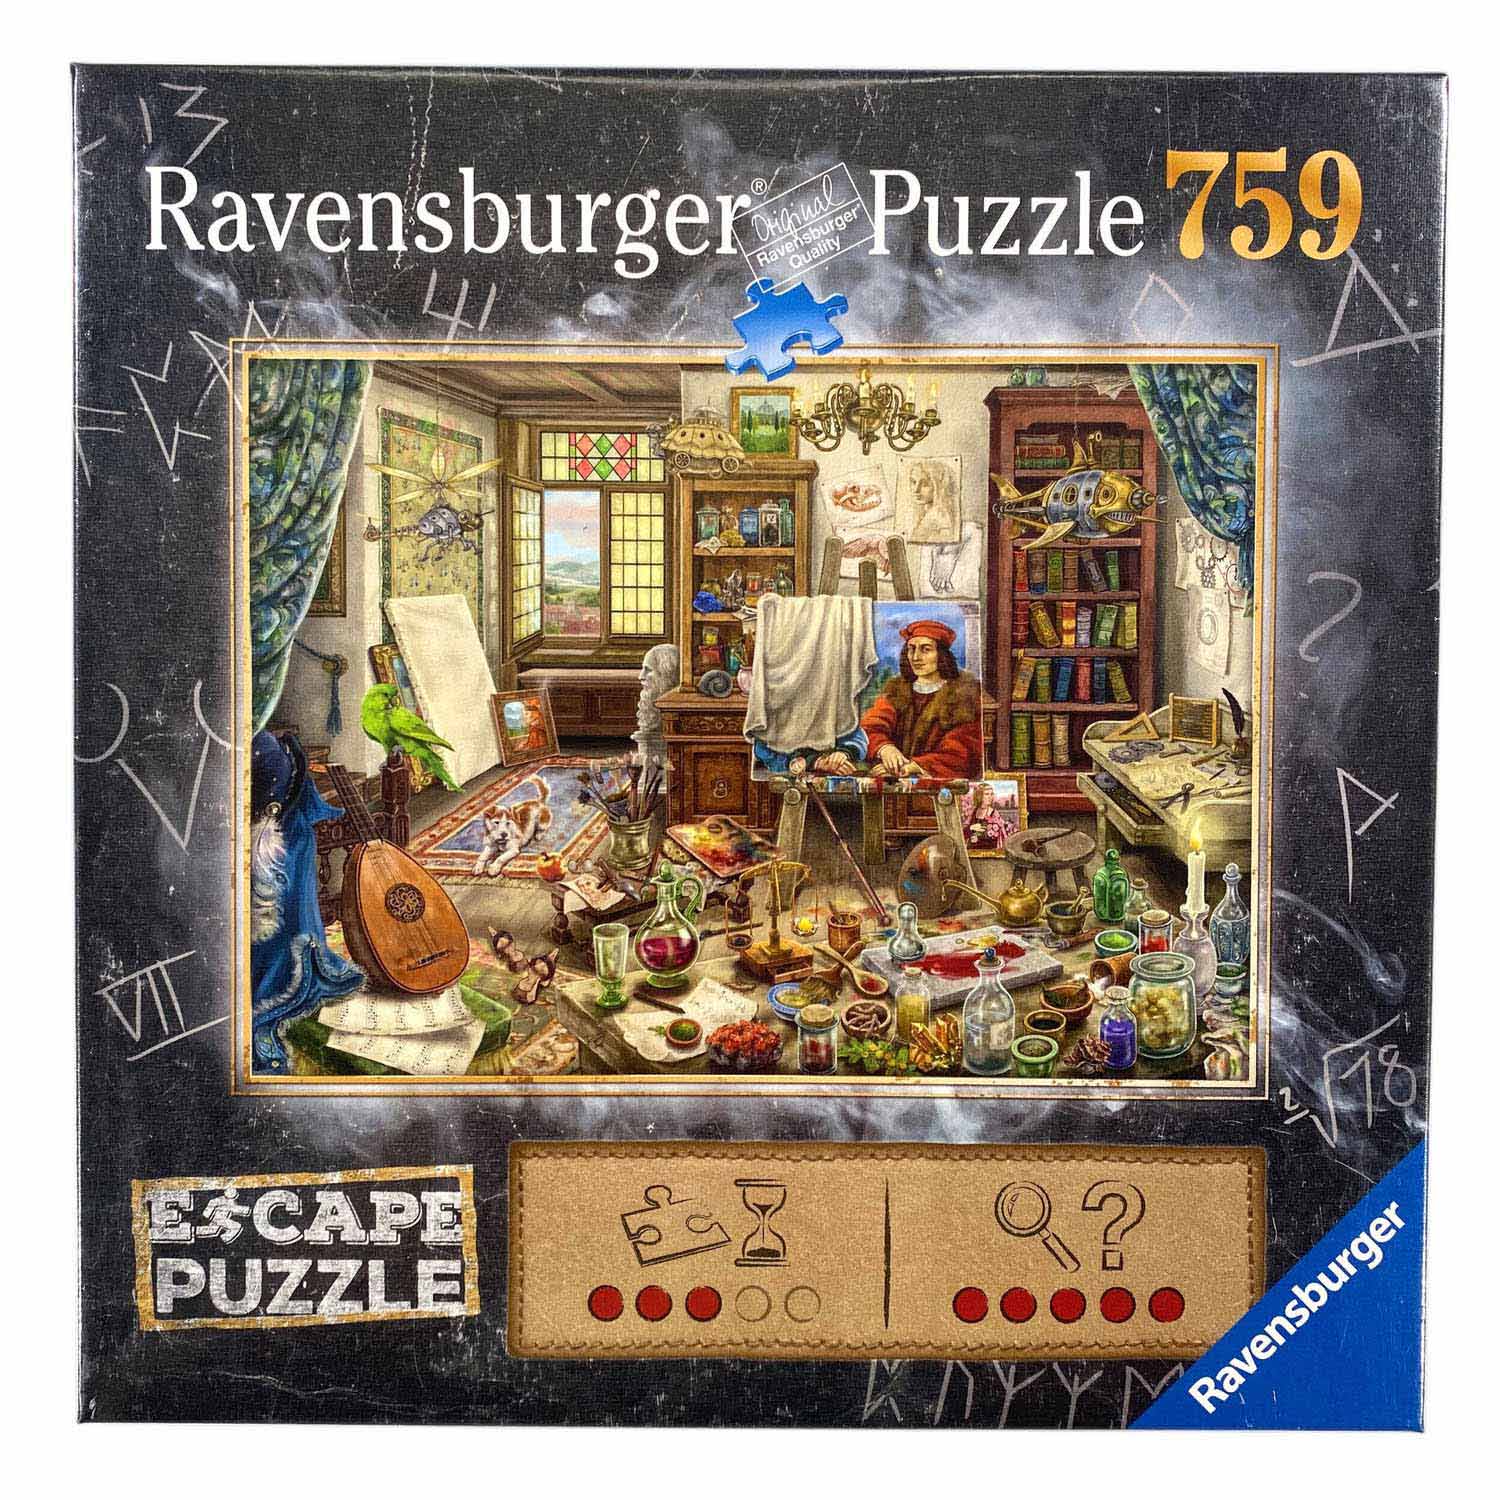 Ravensburger Escape Puzzel - Da Vinci, 759st.